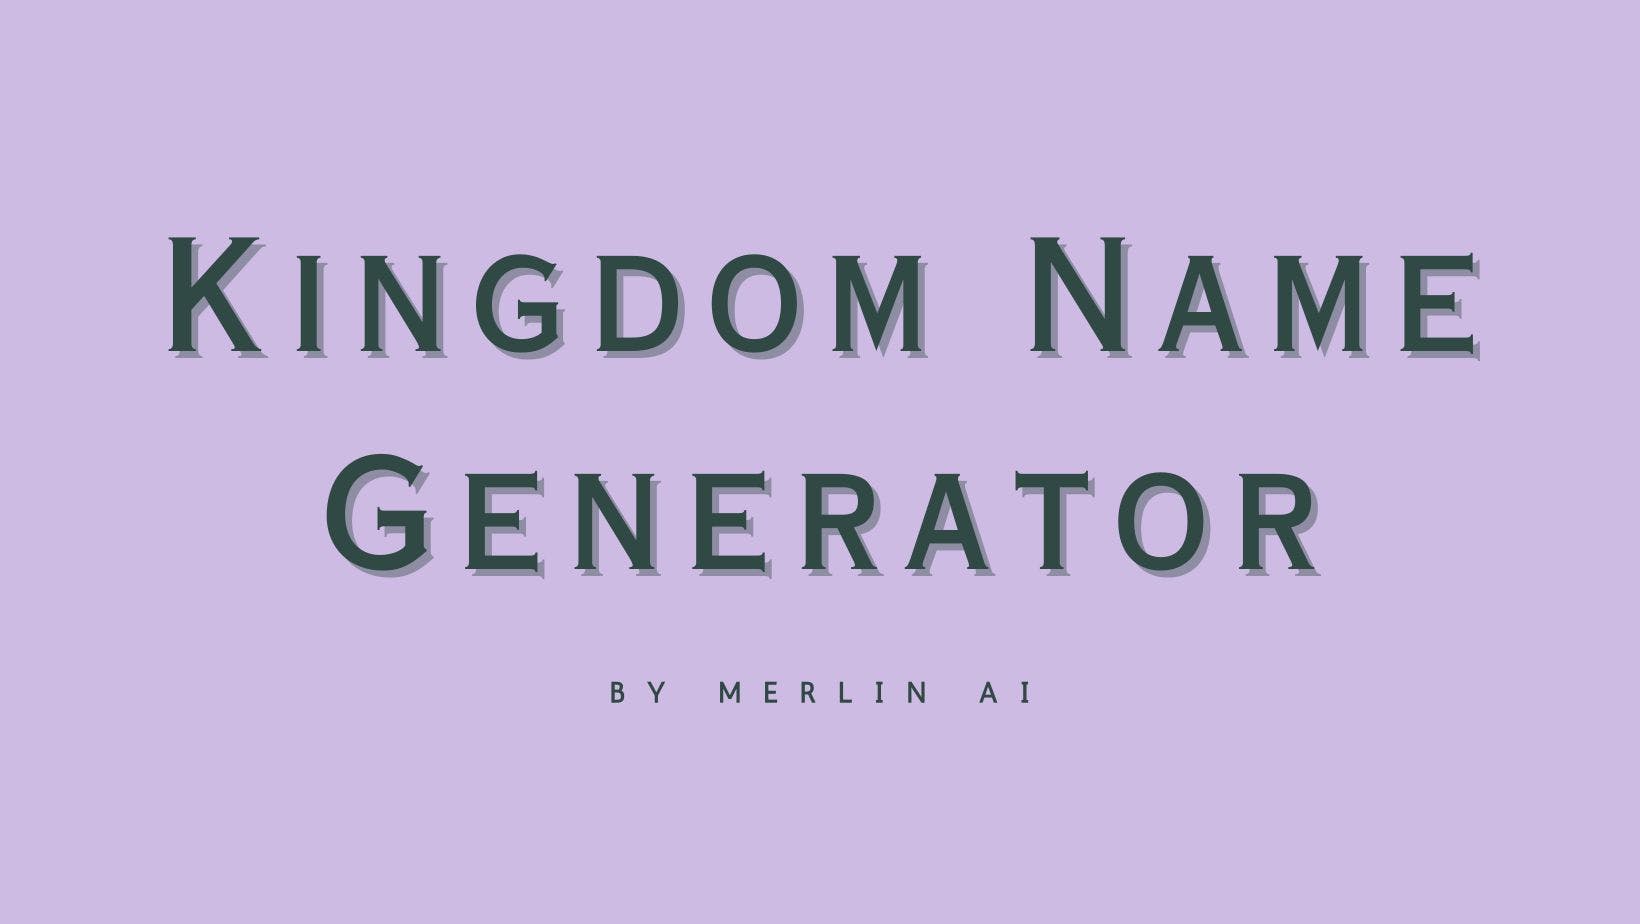 Cover Image for Générateur gratuit de noms de royaume par Merlin AI